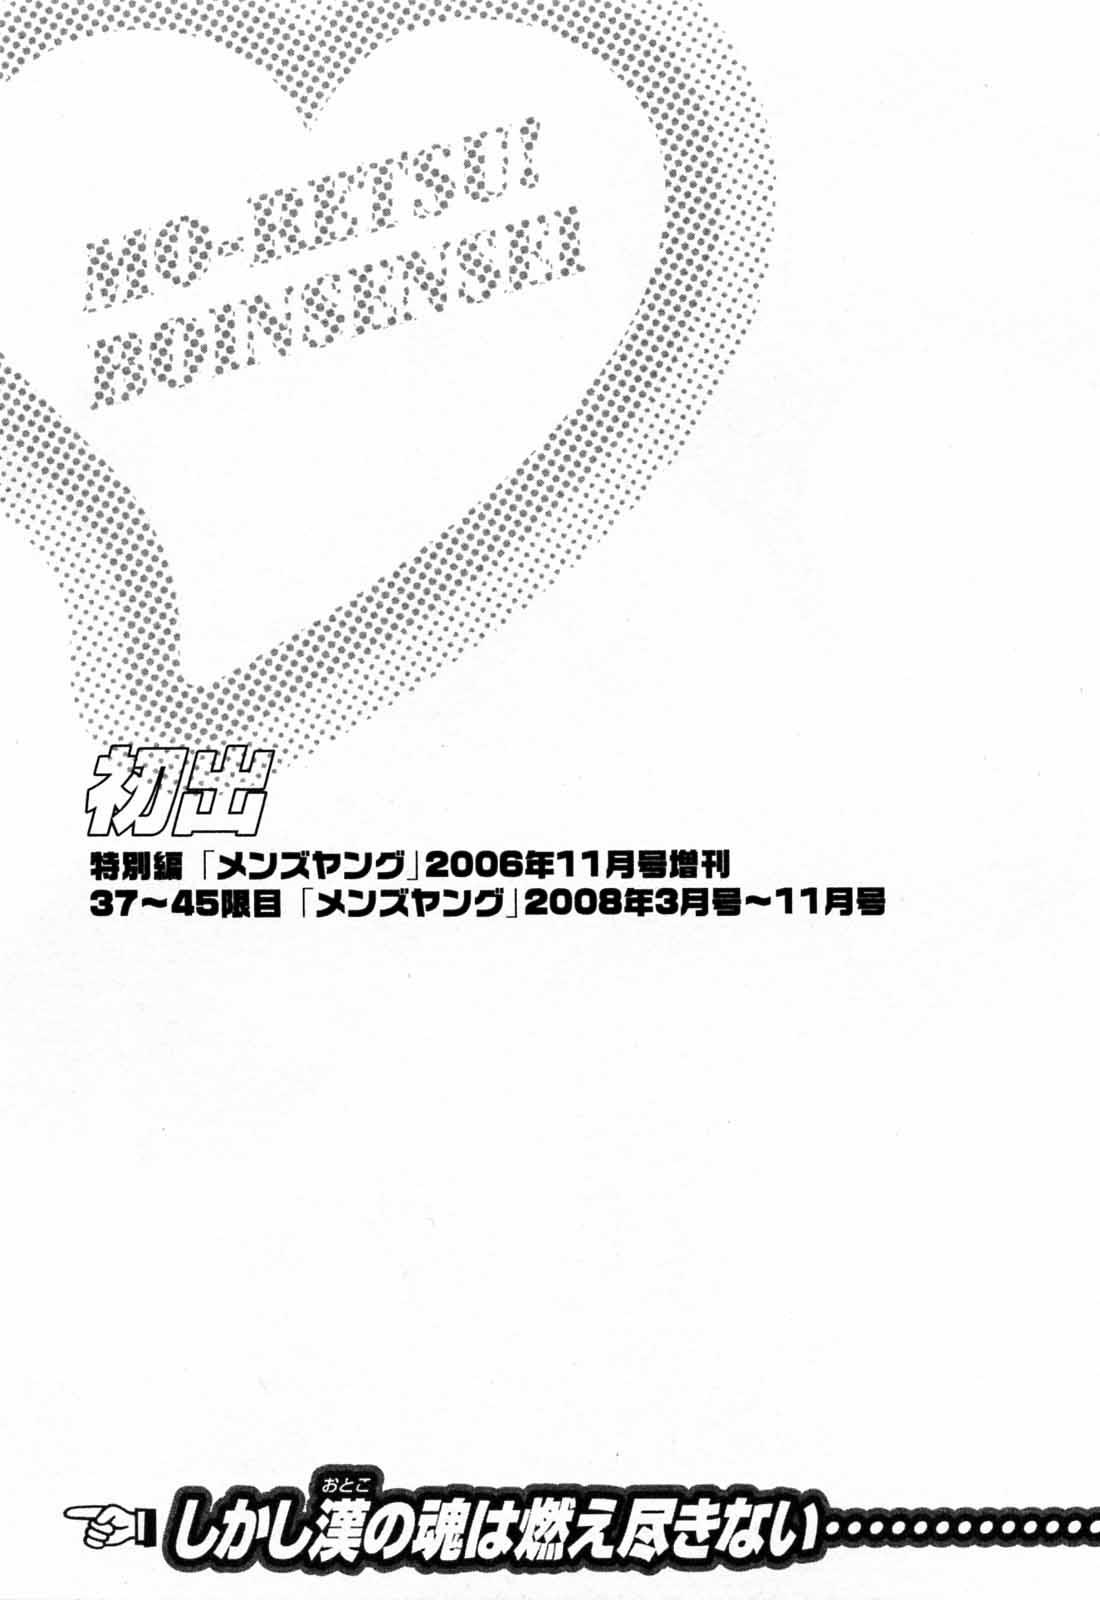 [Hidemaru] Mo-Retsu! Boin Sensei (Boing Boing Teacher) Vol.5 194